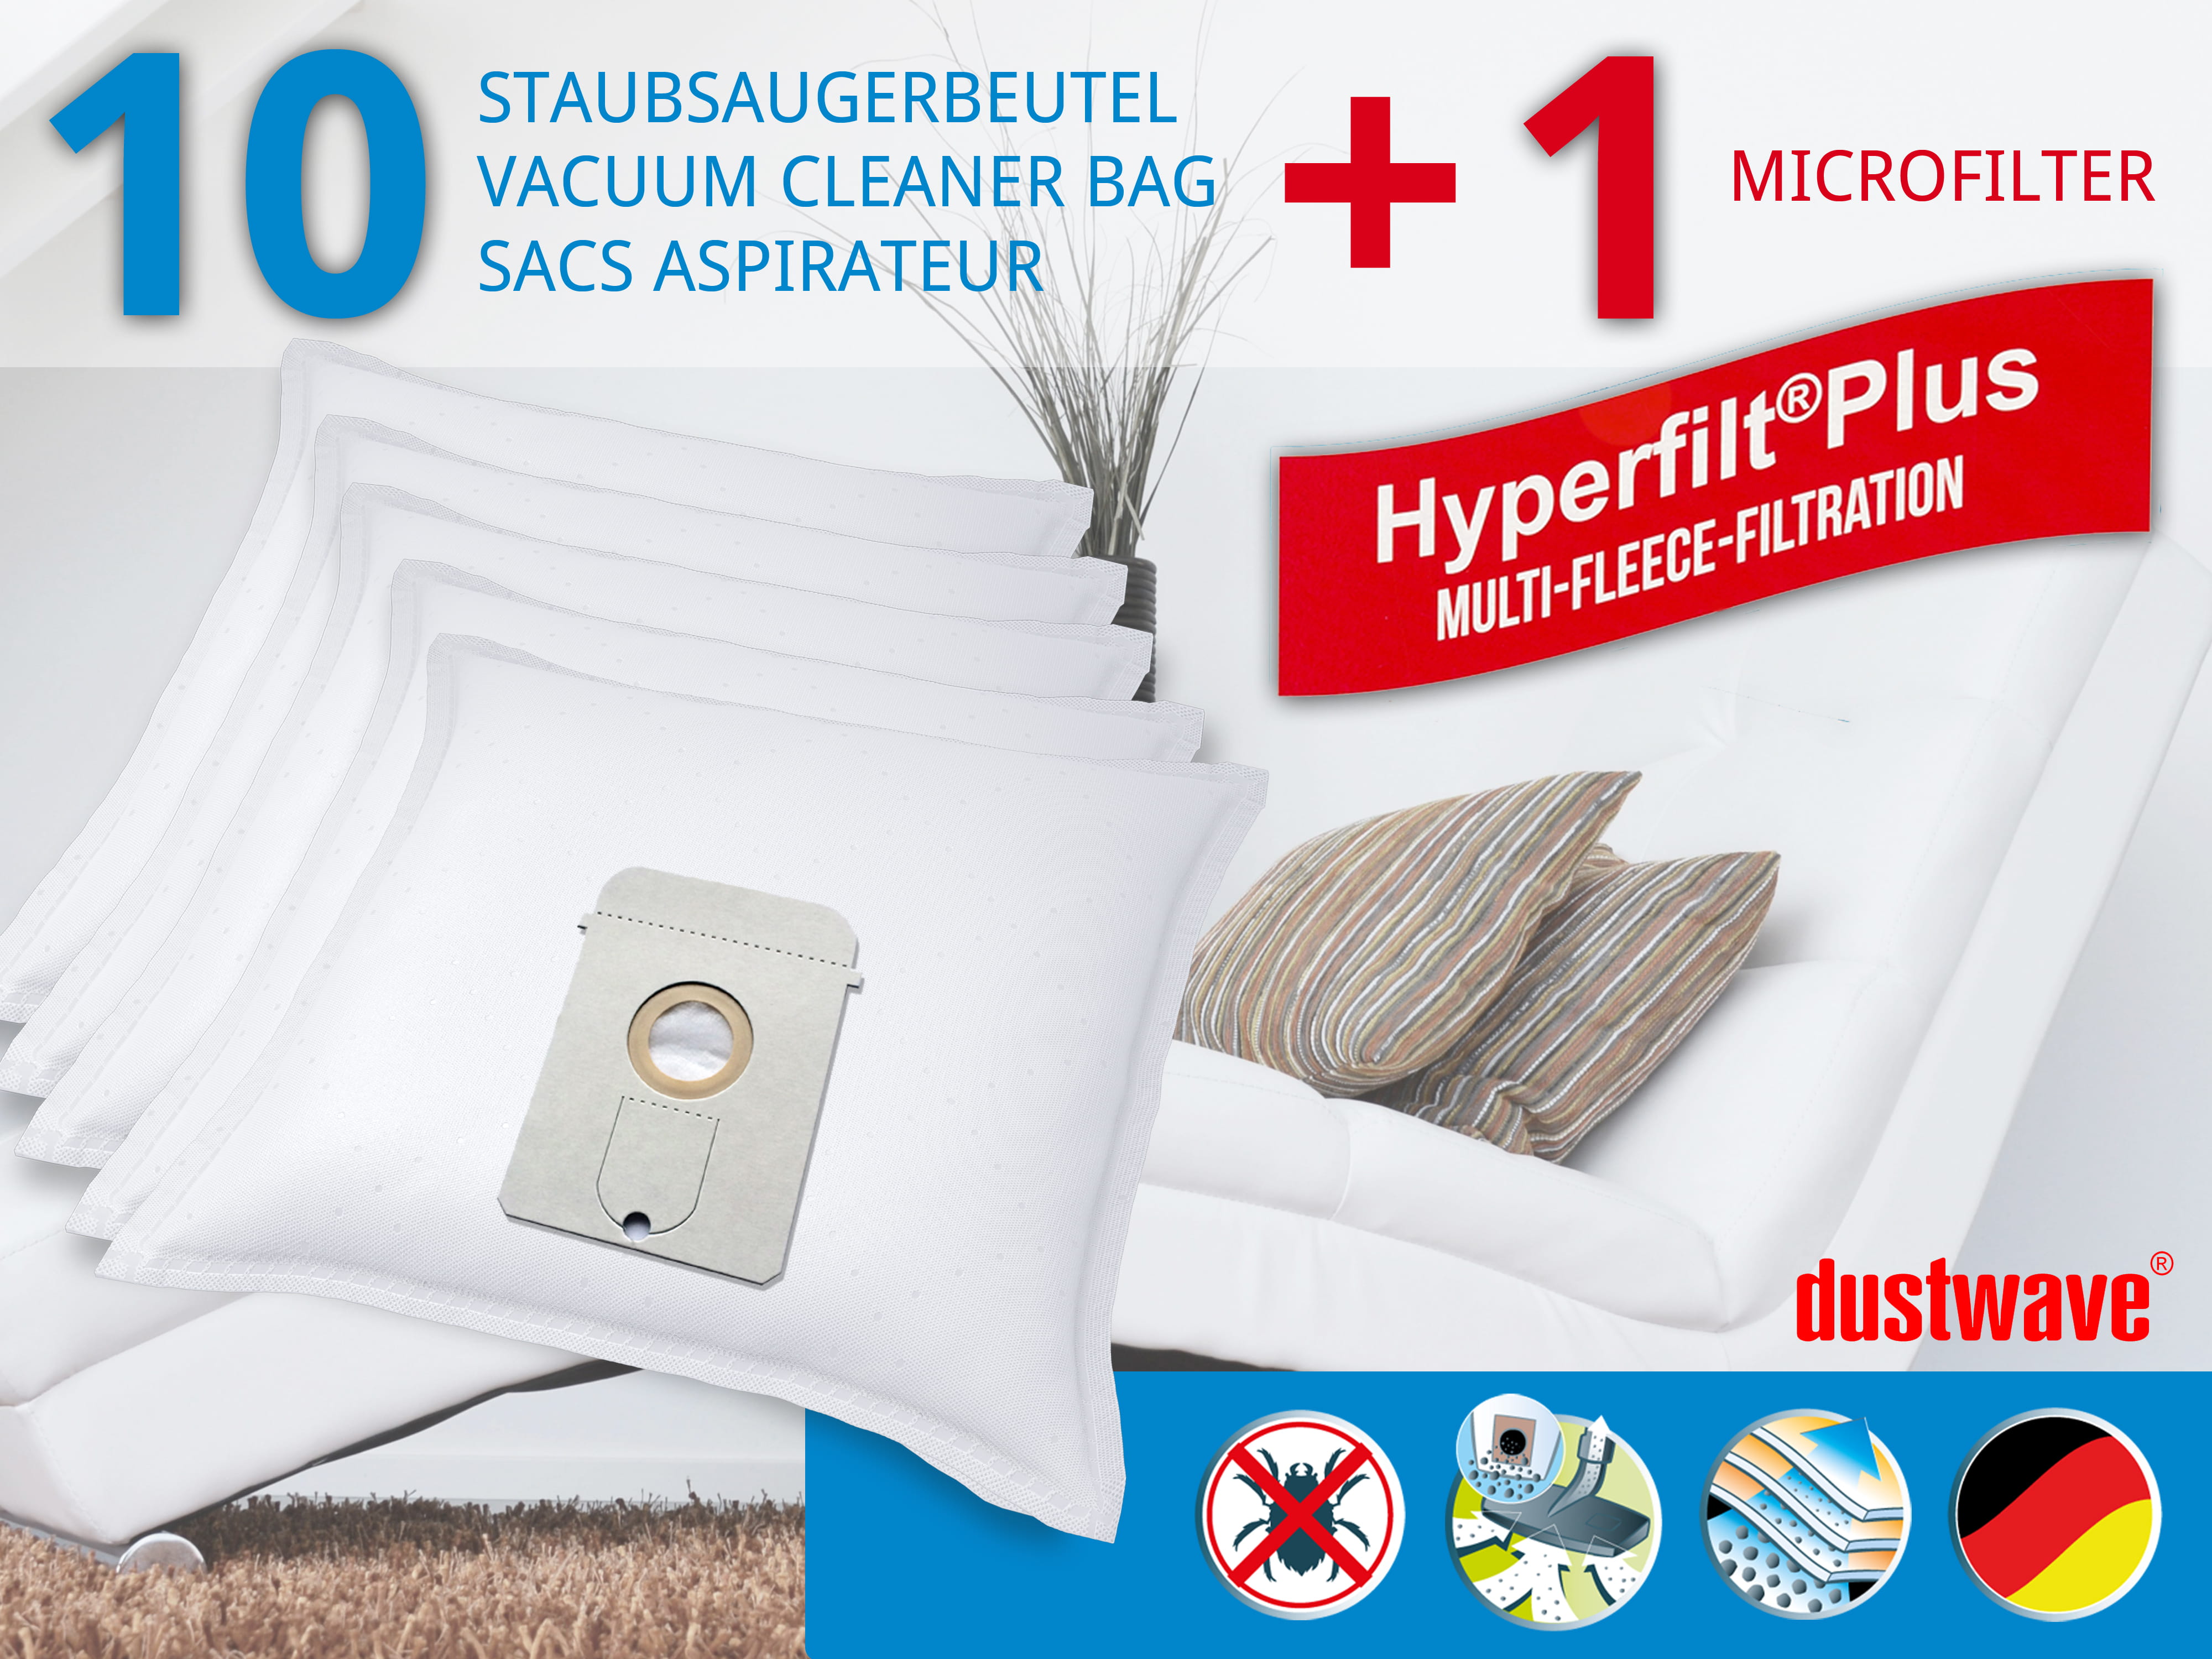 Dustwave® 10 Staubsaugerbeutel für AEG Vampyr 7209 Electronic - hocheffizient, mehrlagiges Mikrovlies mit Hygieneverschluss - Made in Germany